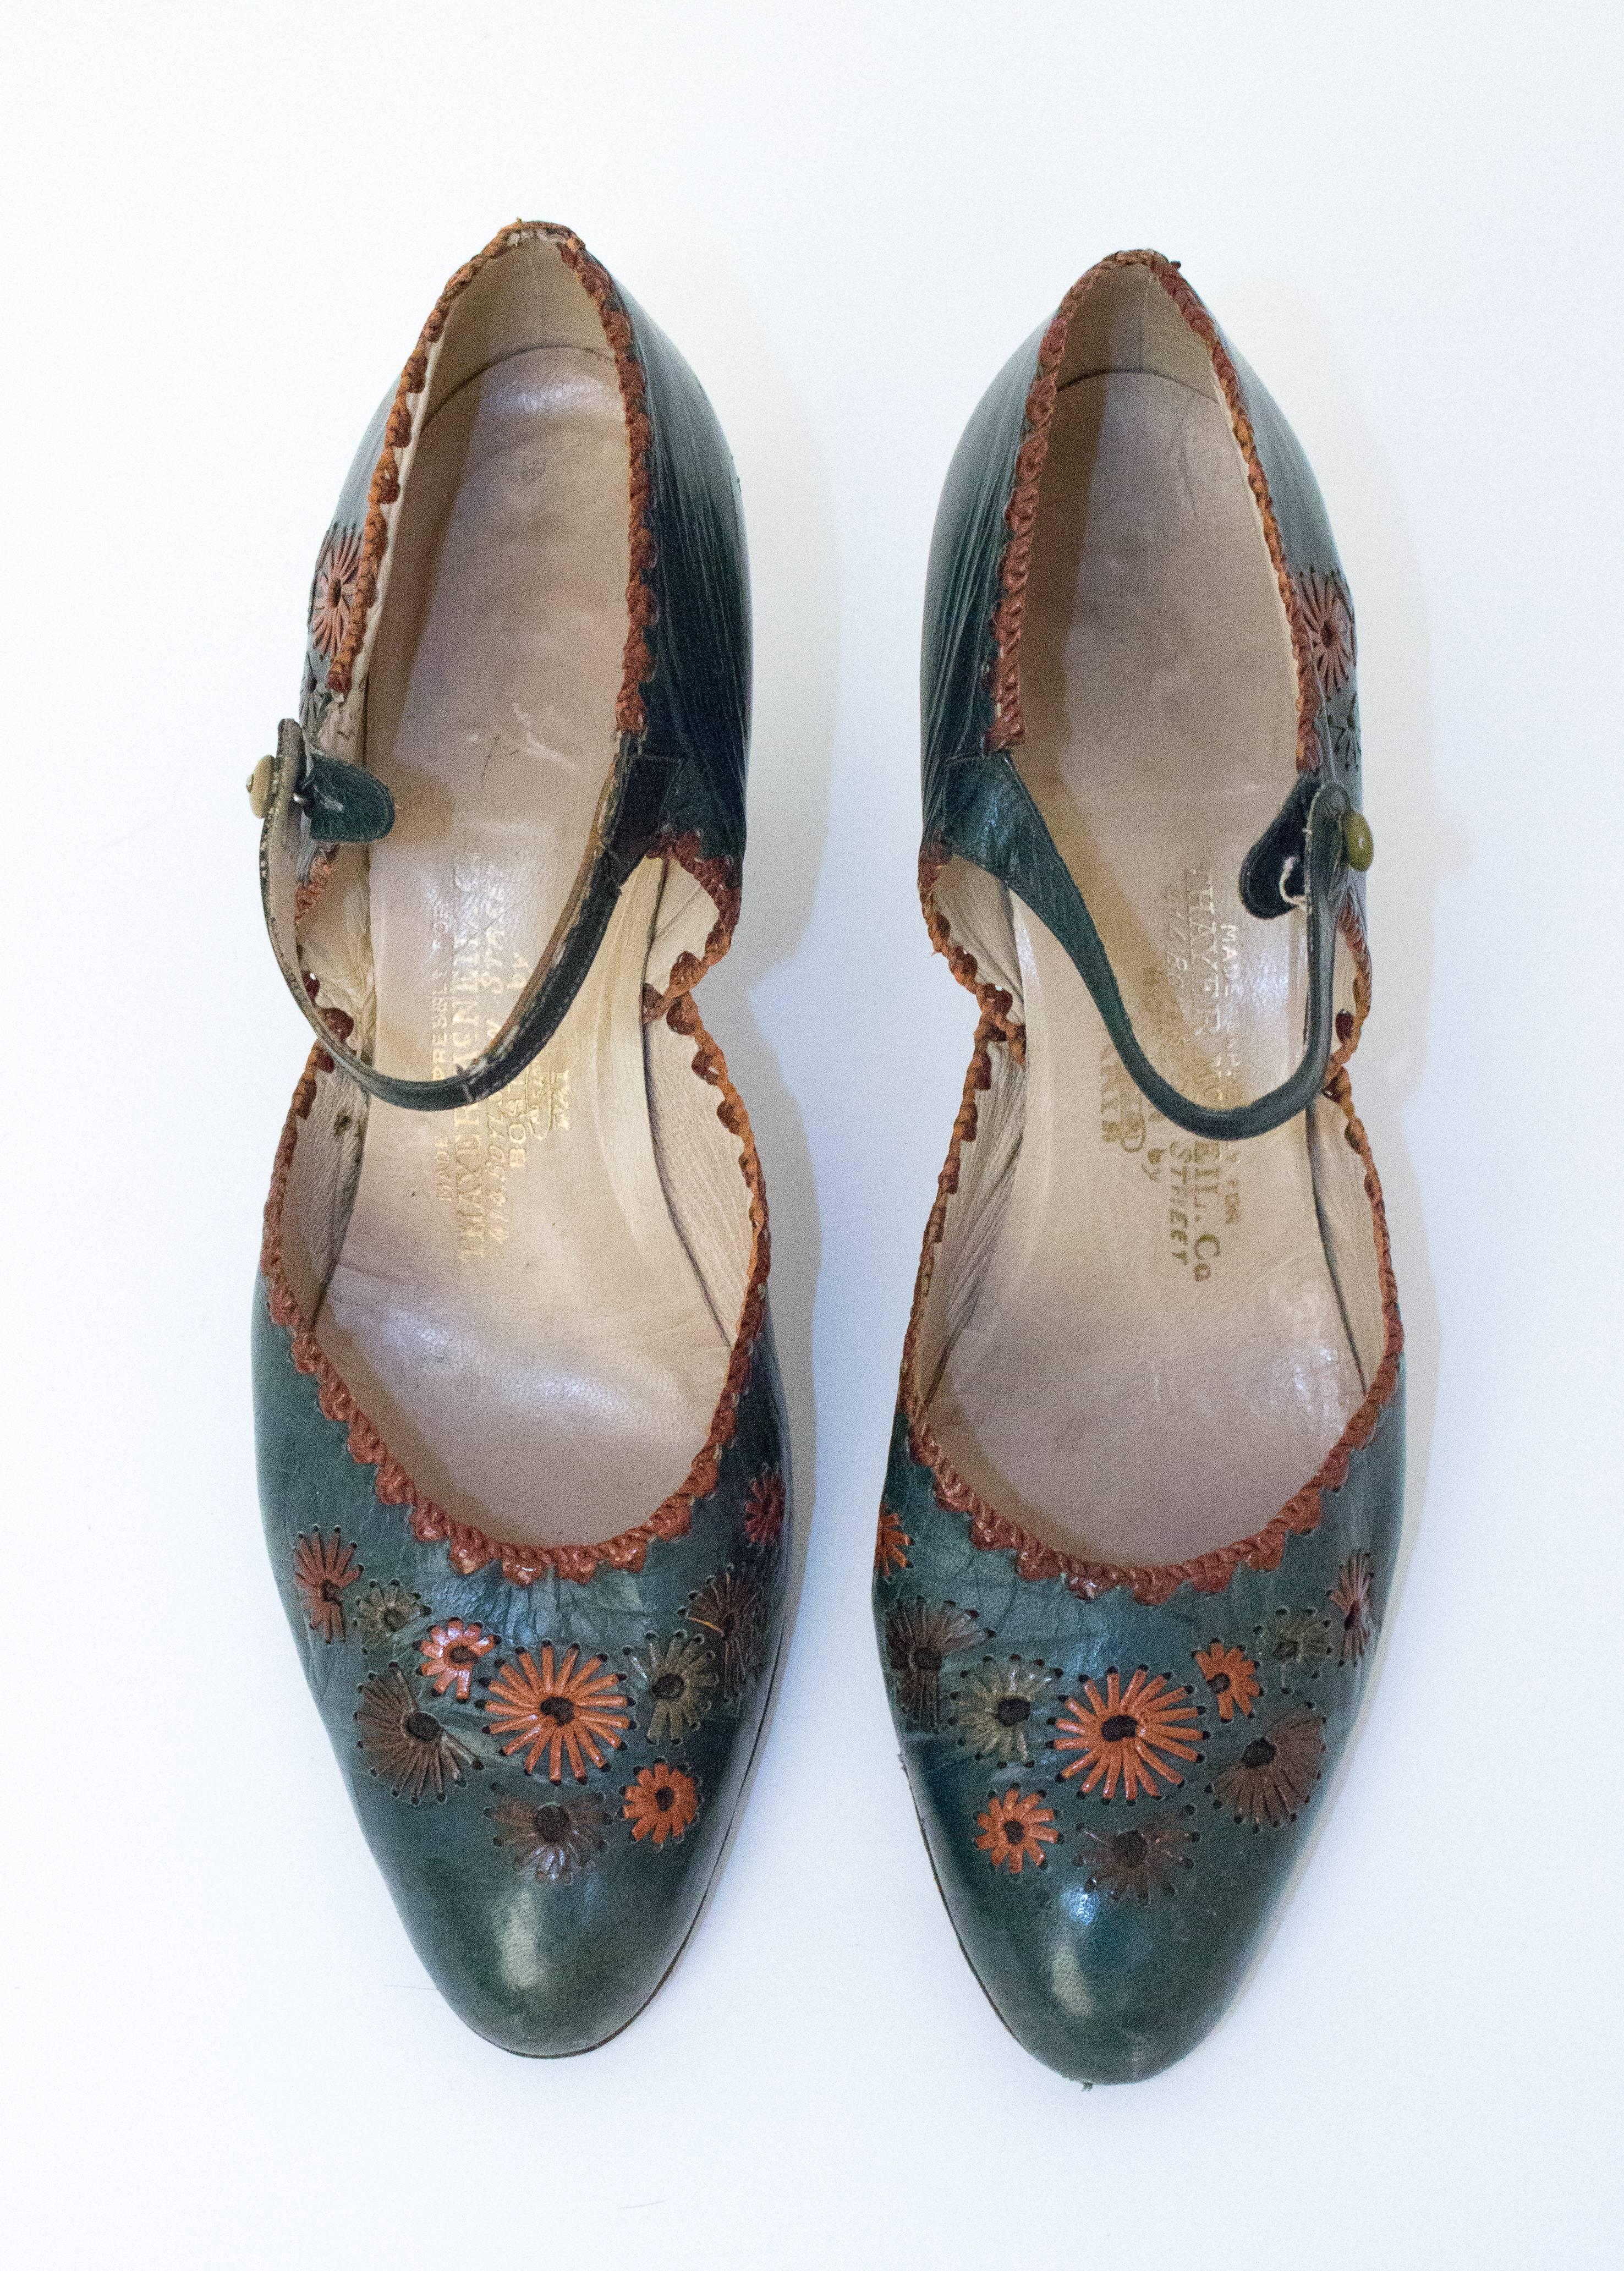 chaussures à talons en cuir vert des années 20 avec des embellissements floraux. Semelles en cuir. Boutons en bakélite. 

Mesures :
Semelle intérieure : 9 1/2